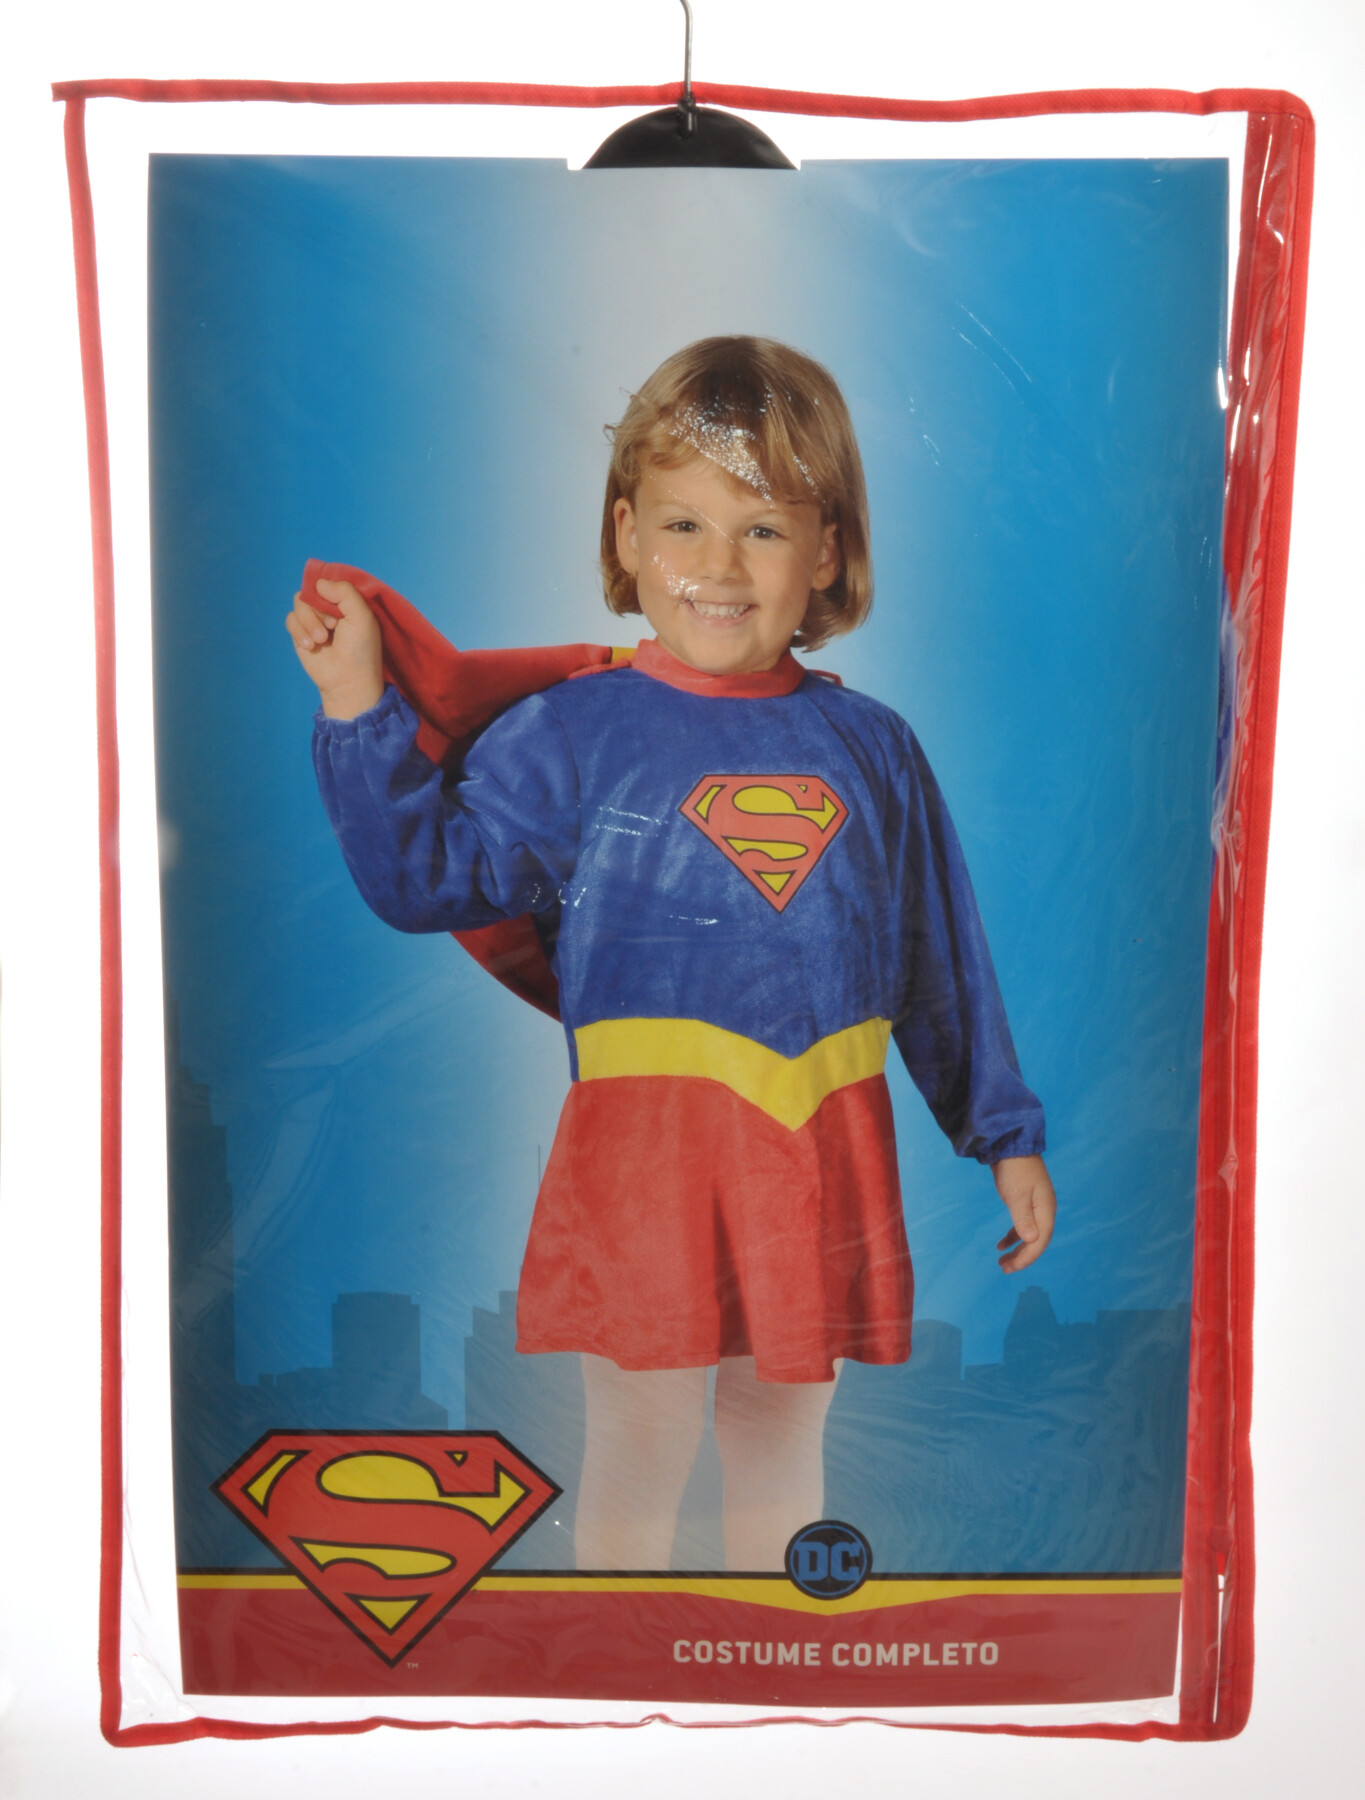 Costume da Supergirl per neonato